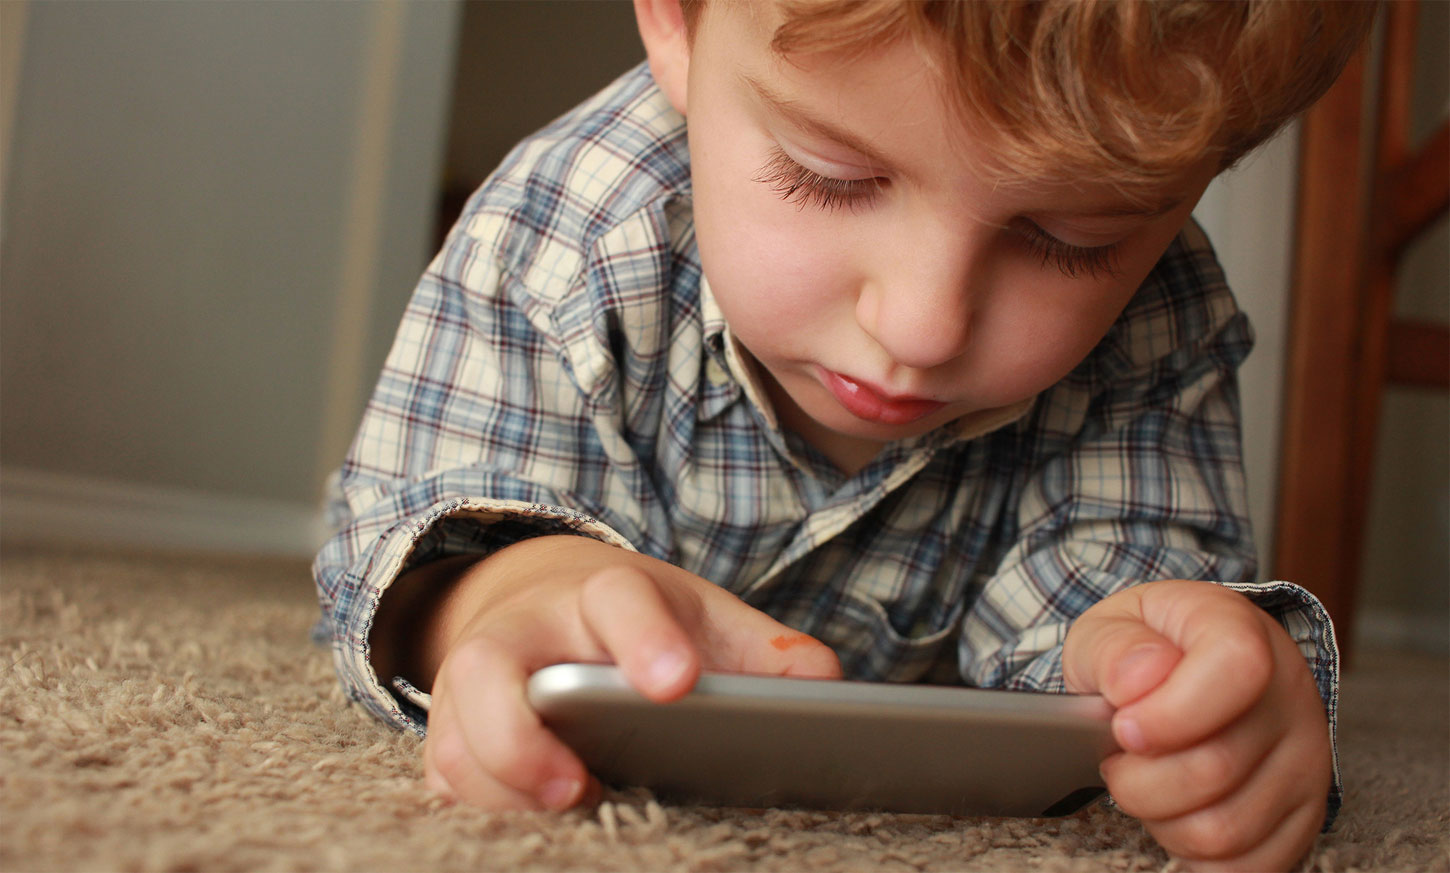 ¿Qué son los contenidos inadecuados en Internet y cómo afectan a los menores?